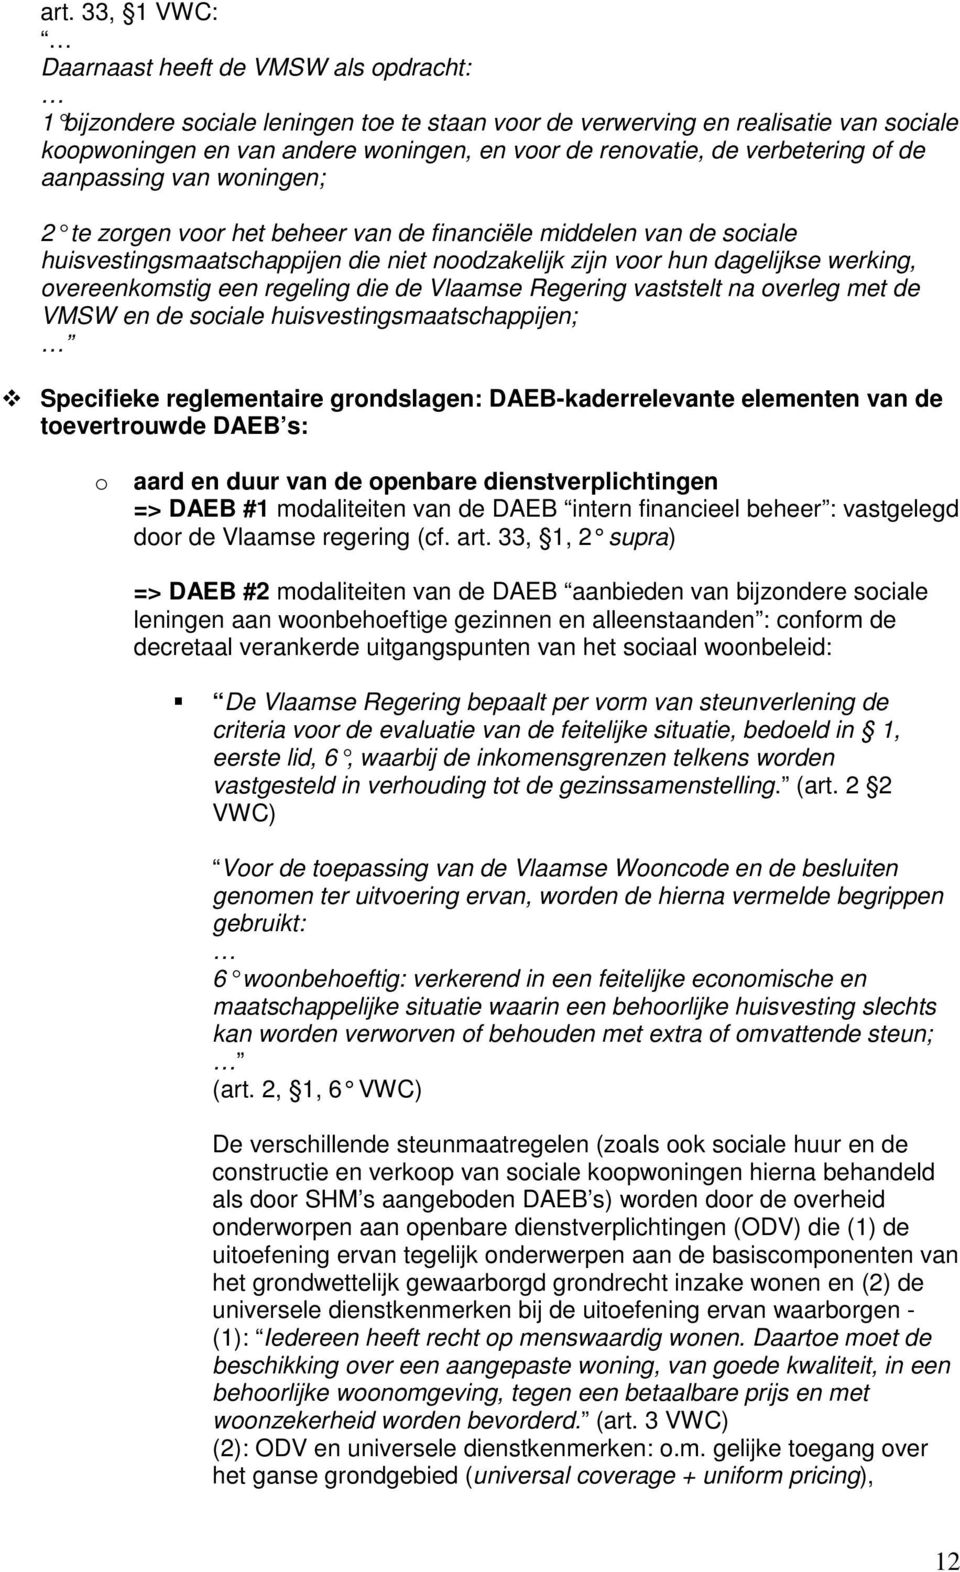 dagelijkse werking, overeenkomstig een regeling die de Vlaamse Regering vaststelt na overleg met de VMSW en de sociale huisvestingsmaatschappijen; Specifieke reglementaire grondslagen: